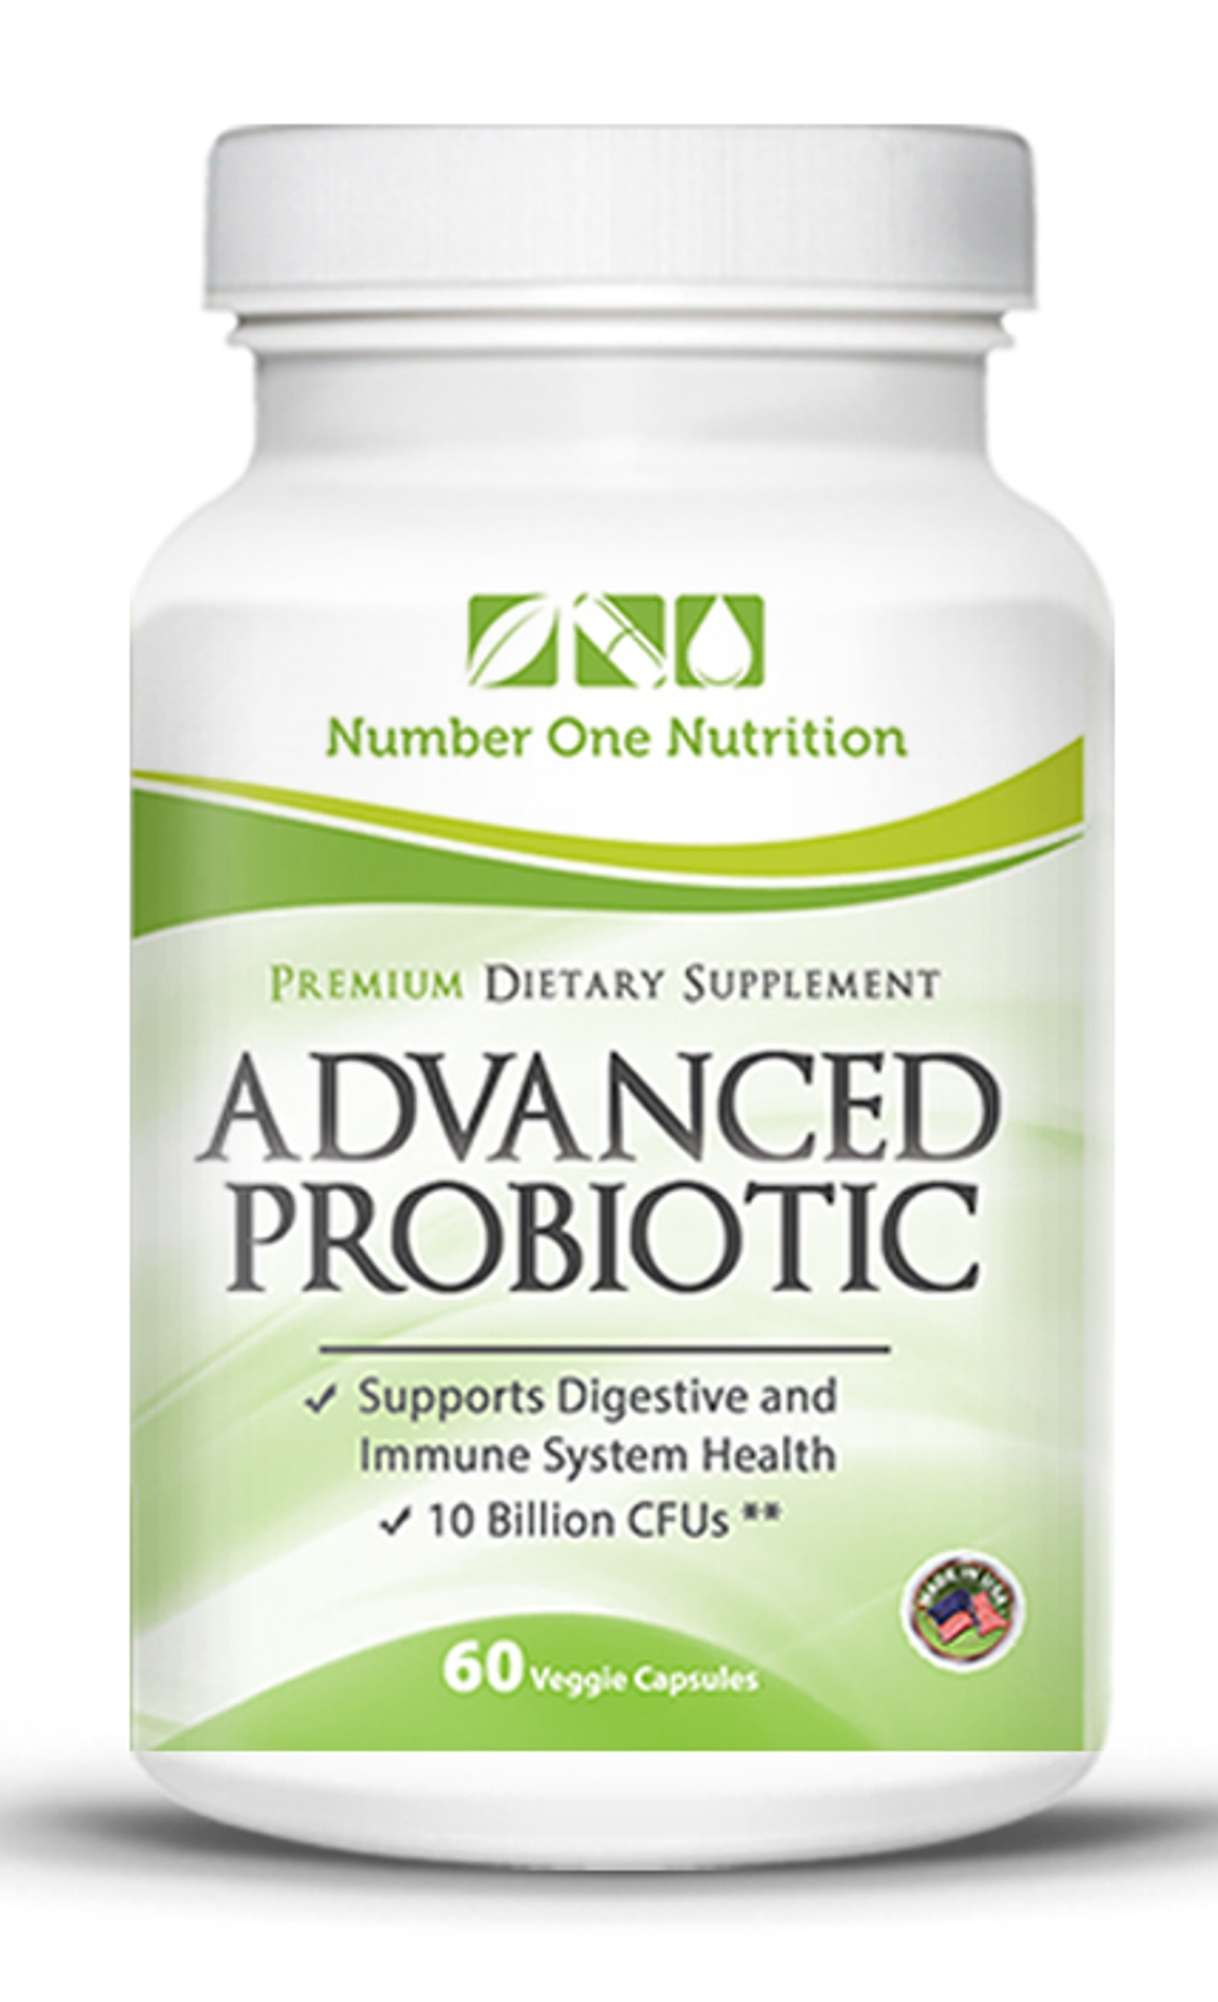 Advanced Probiotics #probiotics